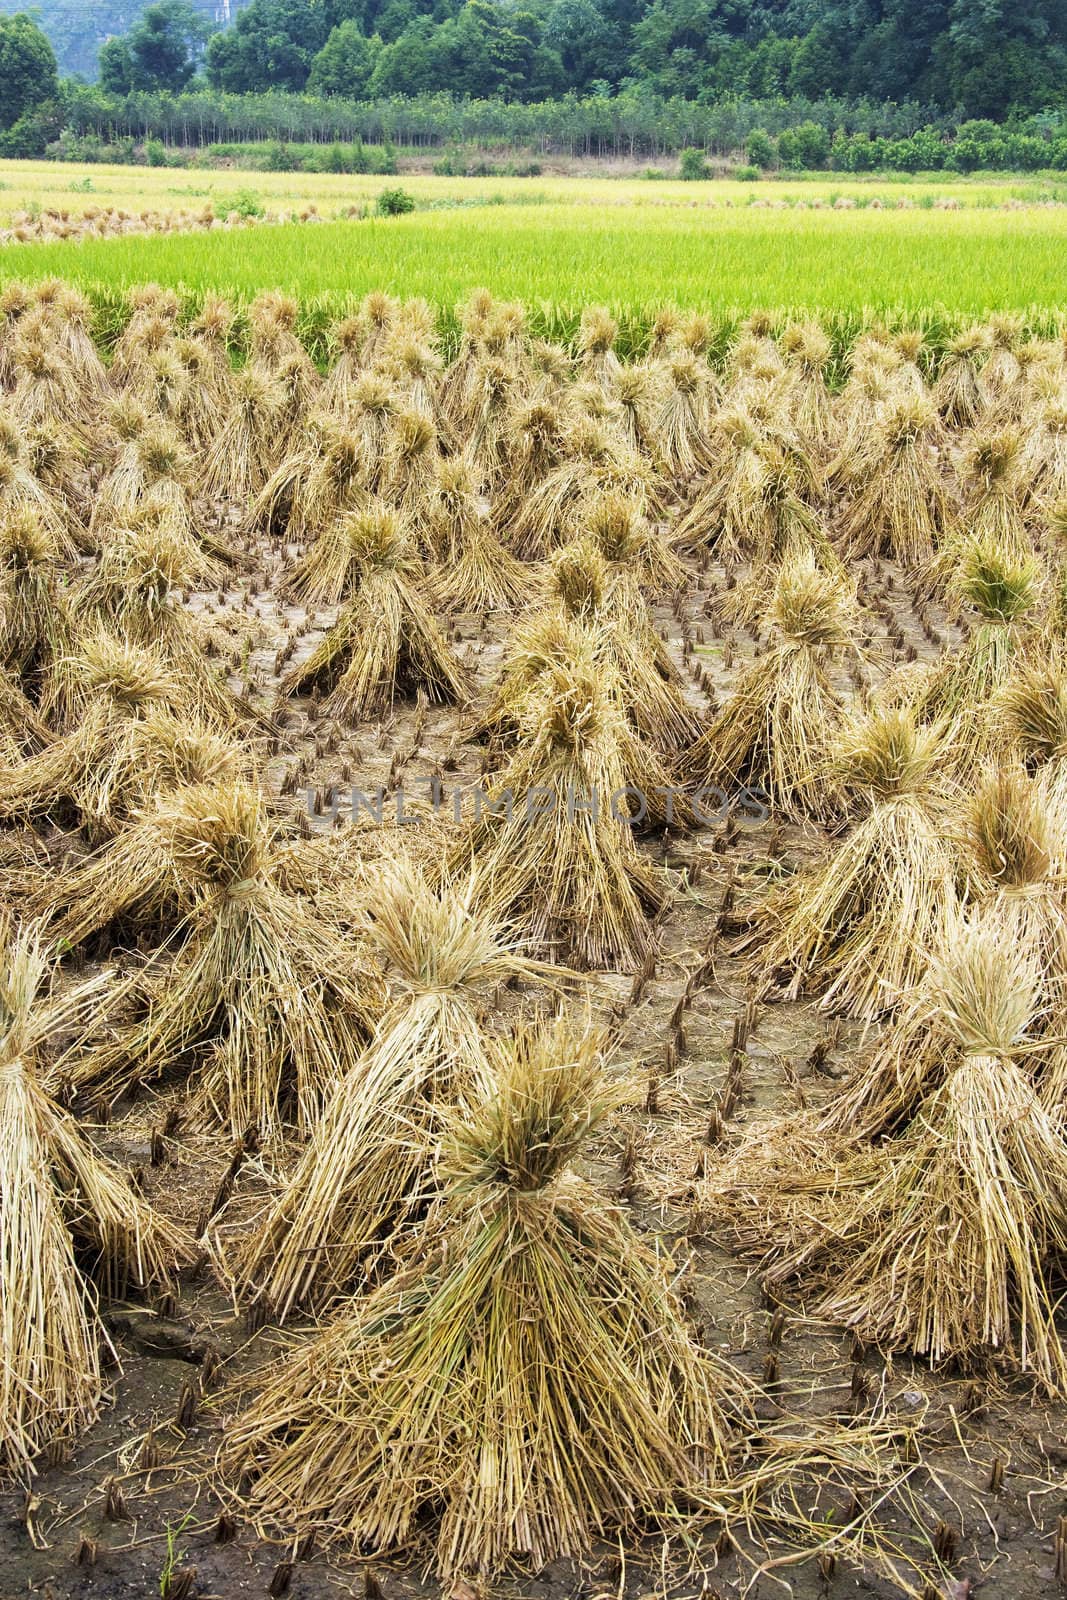 Image of a paddy field at Guilin, China. 